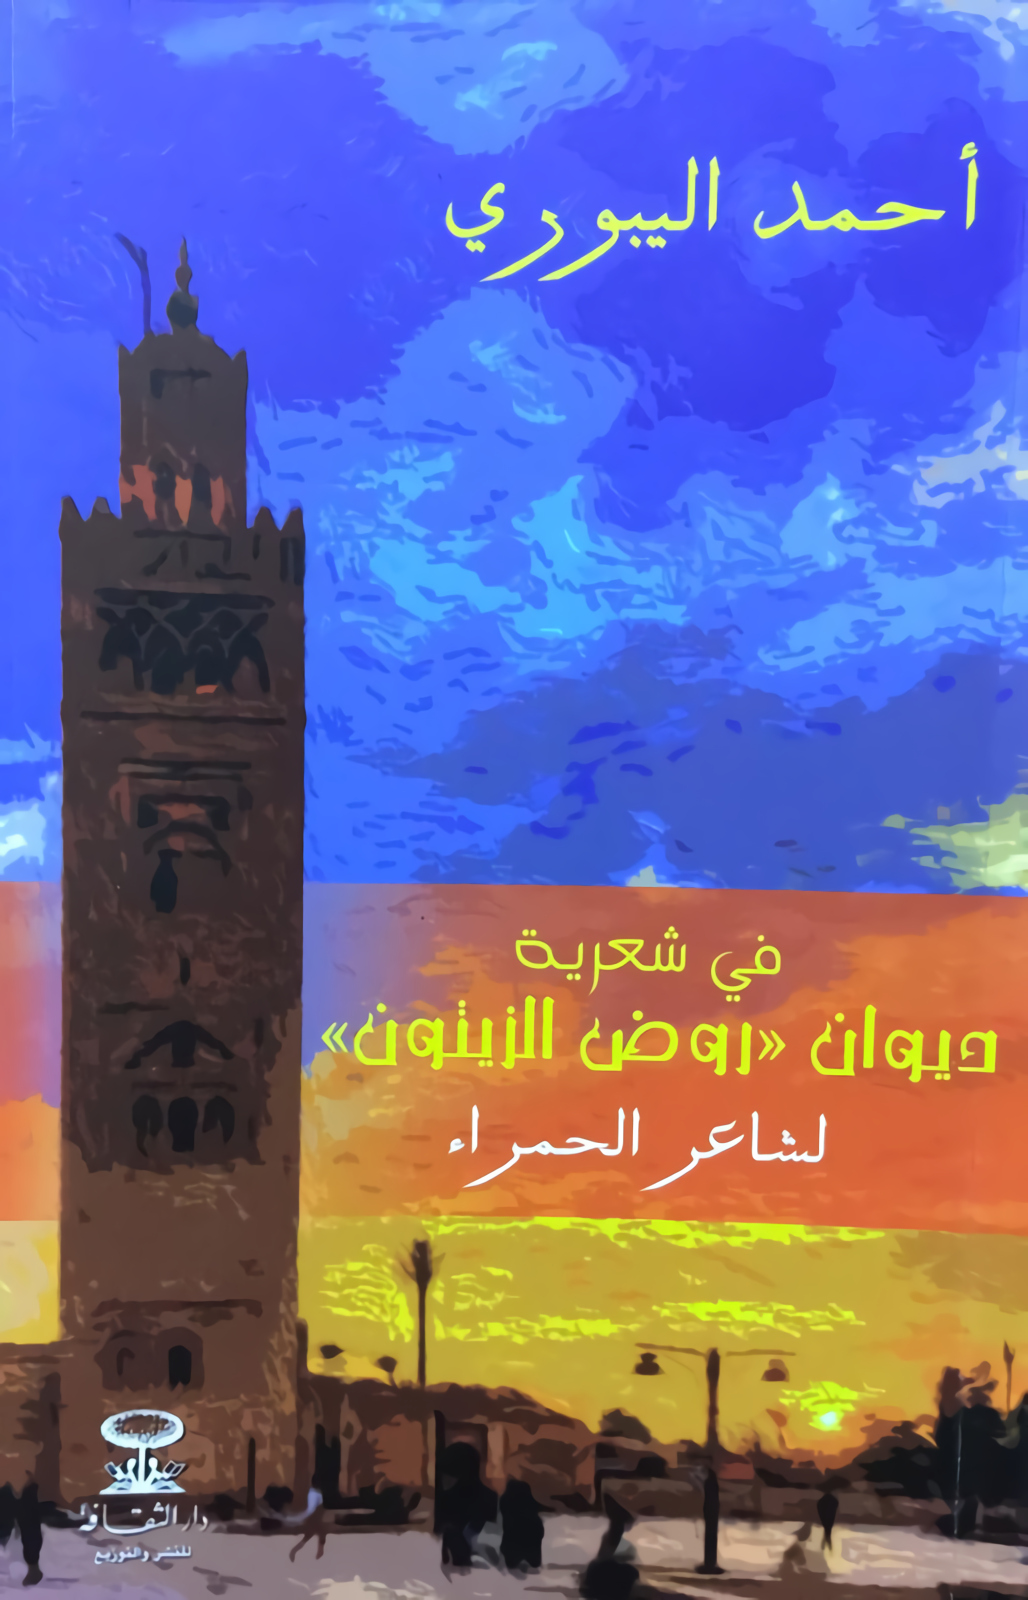 Le critique littéraire Ahmed El Yabouri revisite l’œuvre du poète de la cité ocre Mohamed Ben Brahim